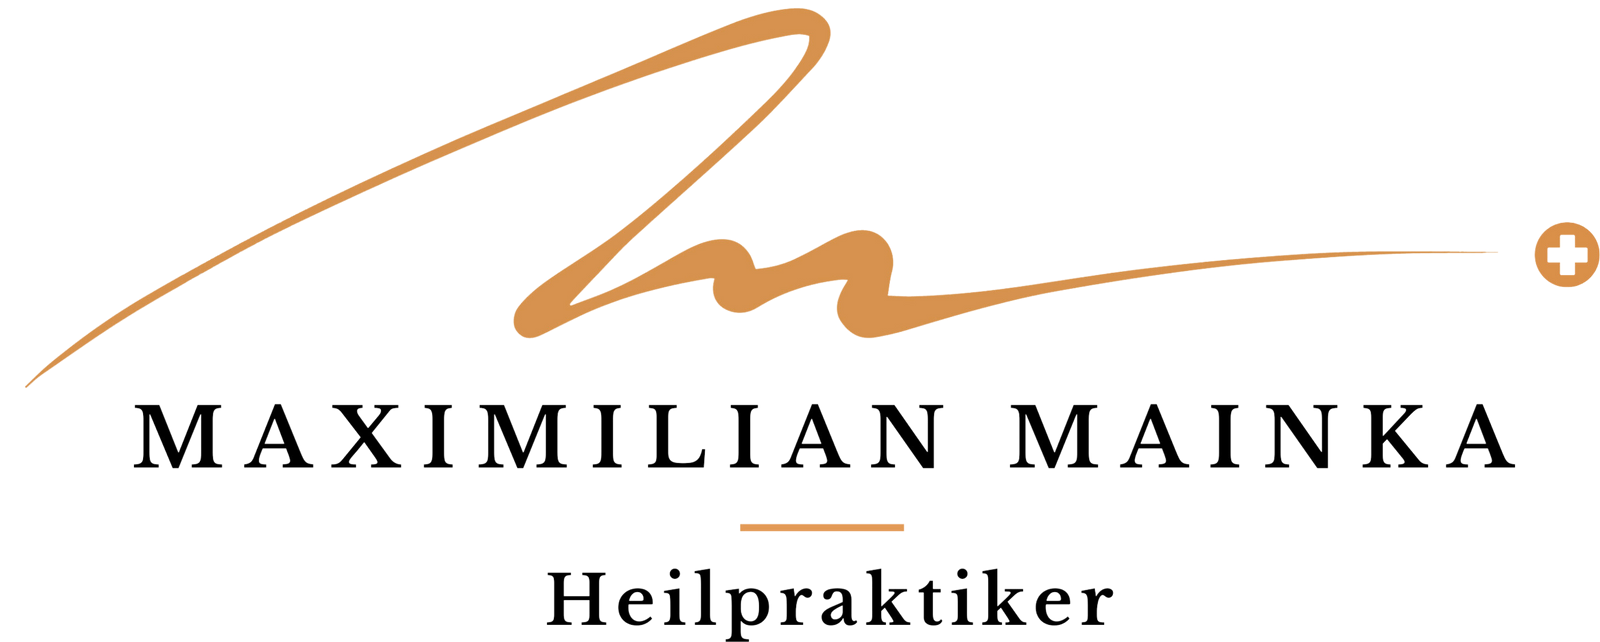 Maximilian Mainka Praxis Logo